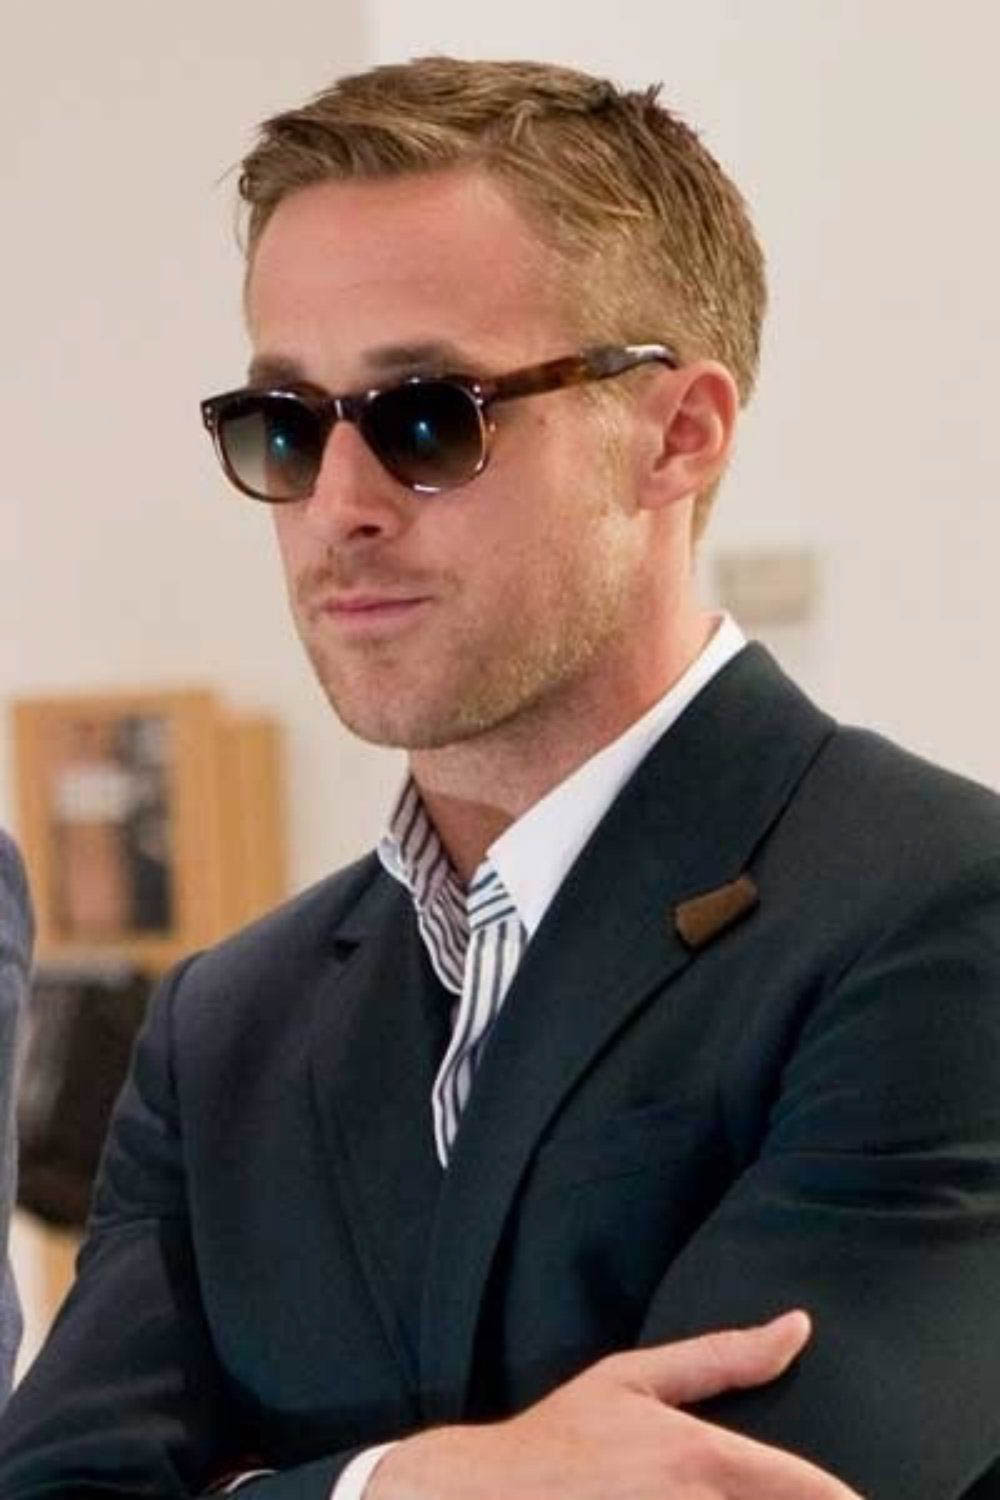 Ryan Gosling Haircut 20 Best Ryan Gosling Haircuts In 2023